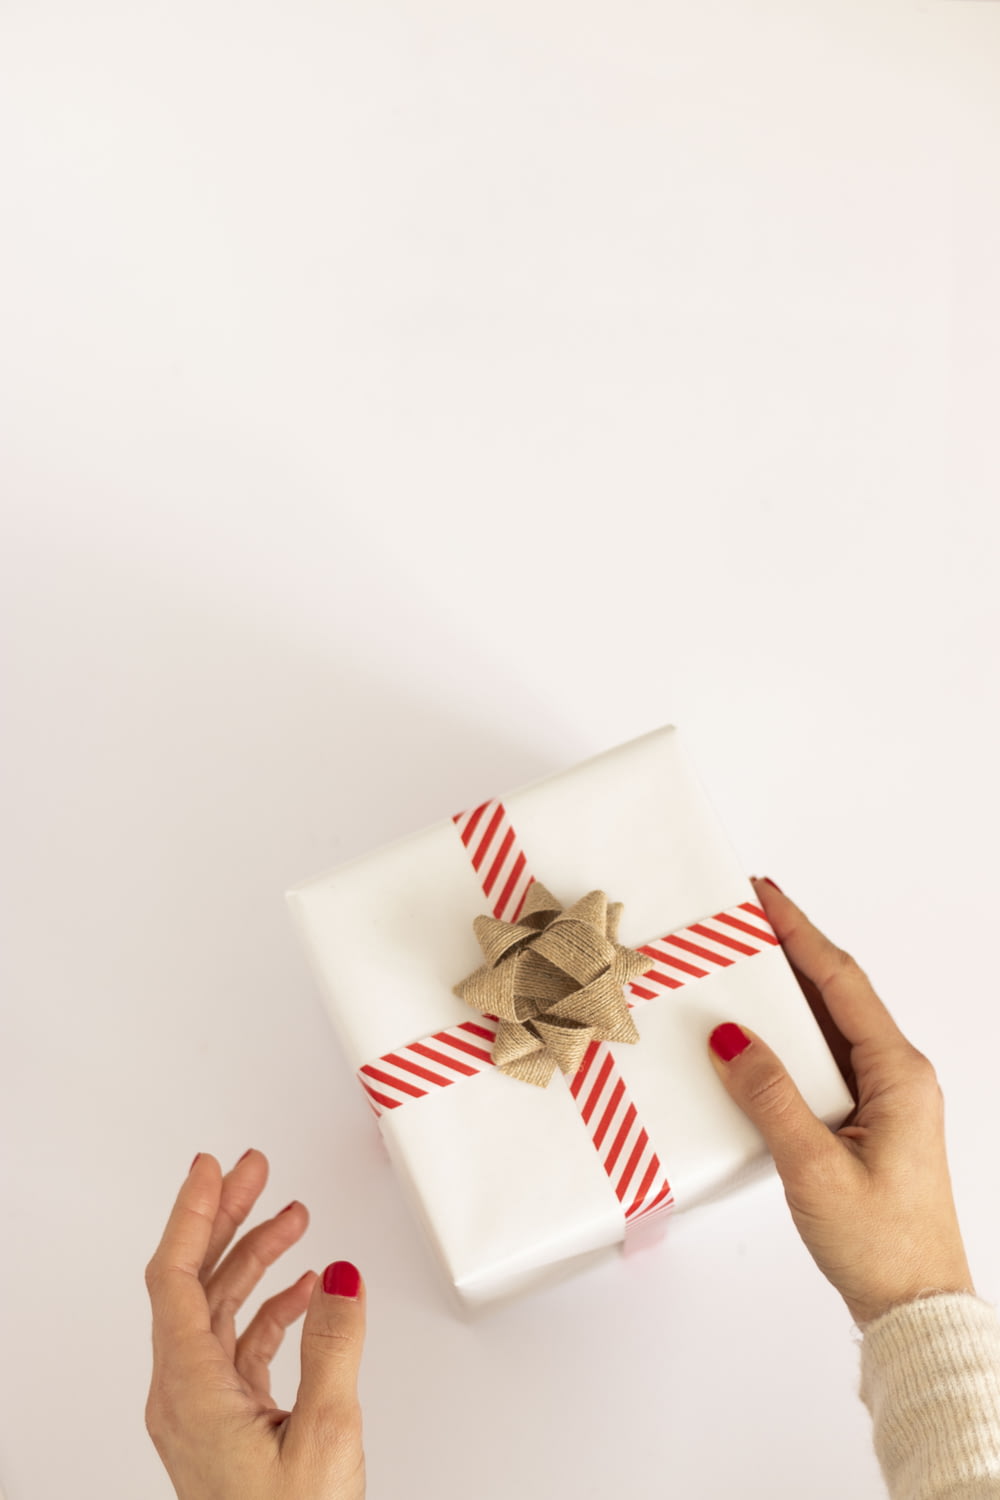 Persona sosteniendo una caja de regalo blanca y roja